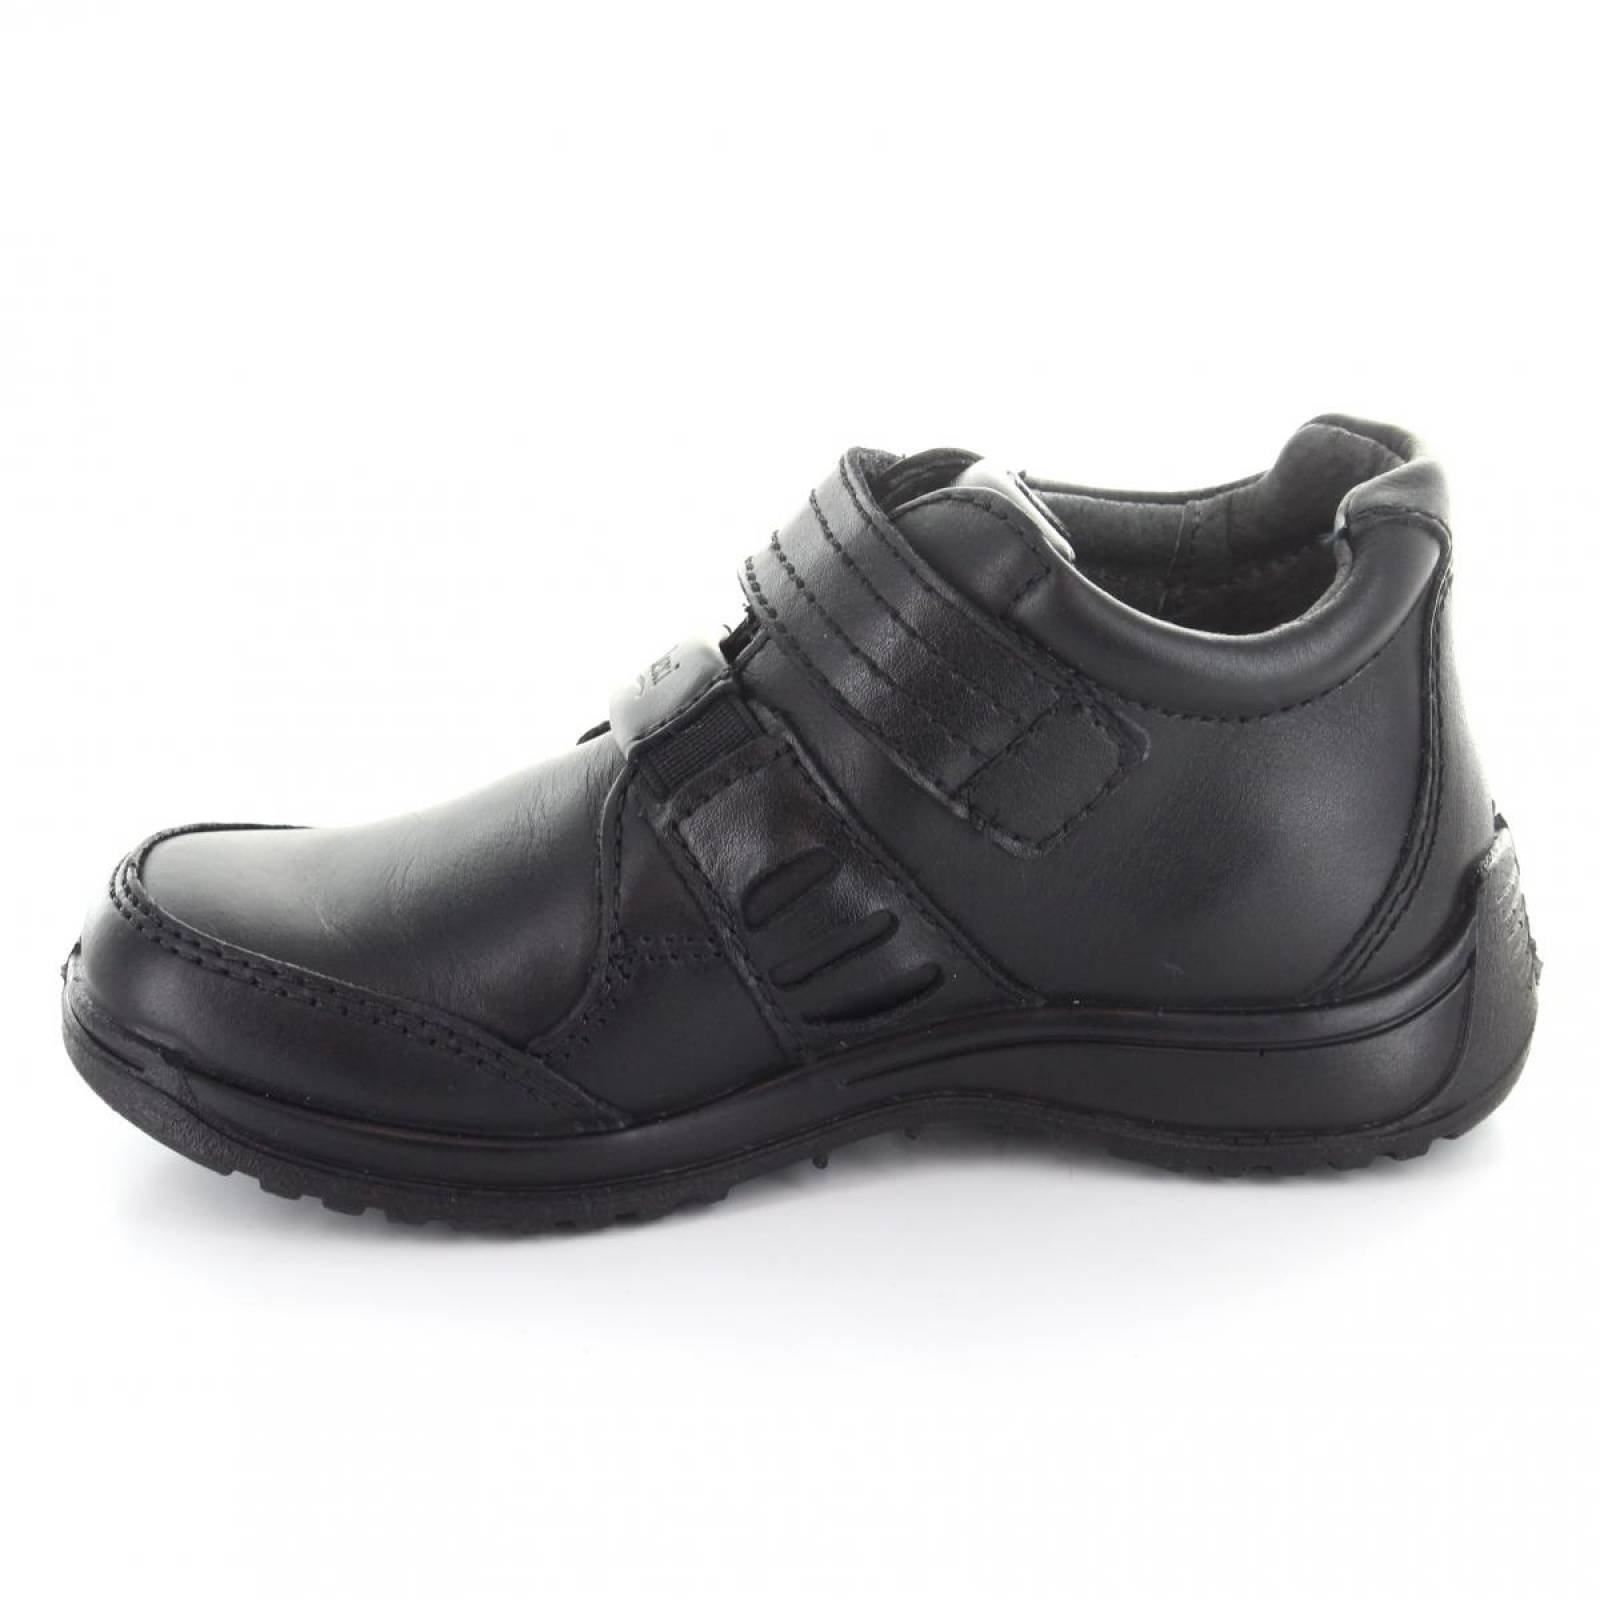 Zapato para Ni o Flexi 57905 046261 Color Negro